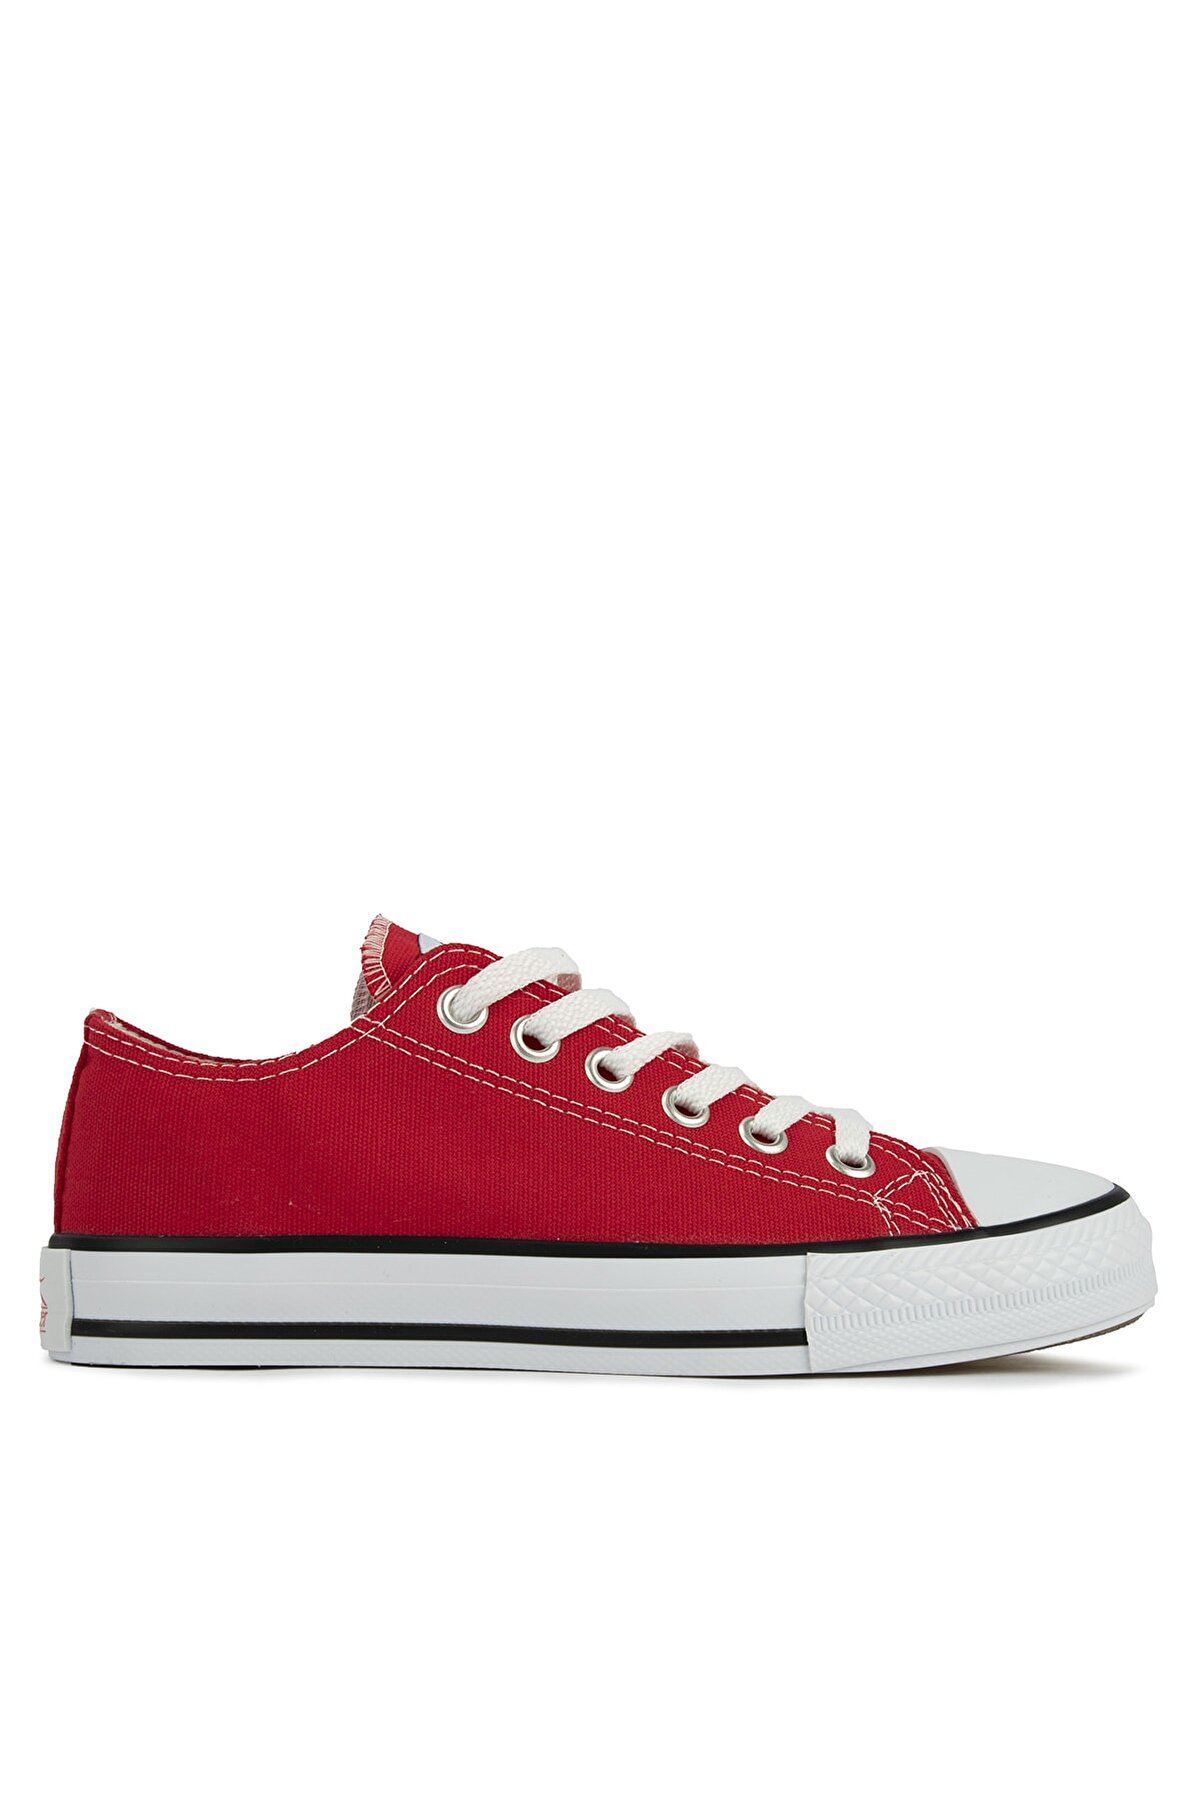 Slazenger Kadın Kırmızı Sun Sneaker Ayakkabı Sa11lk065